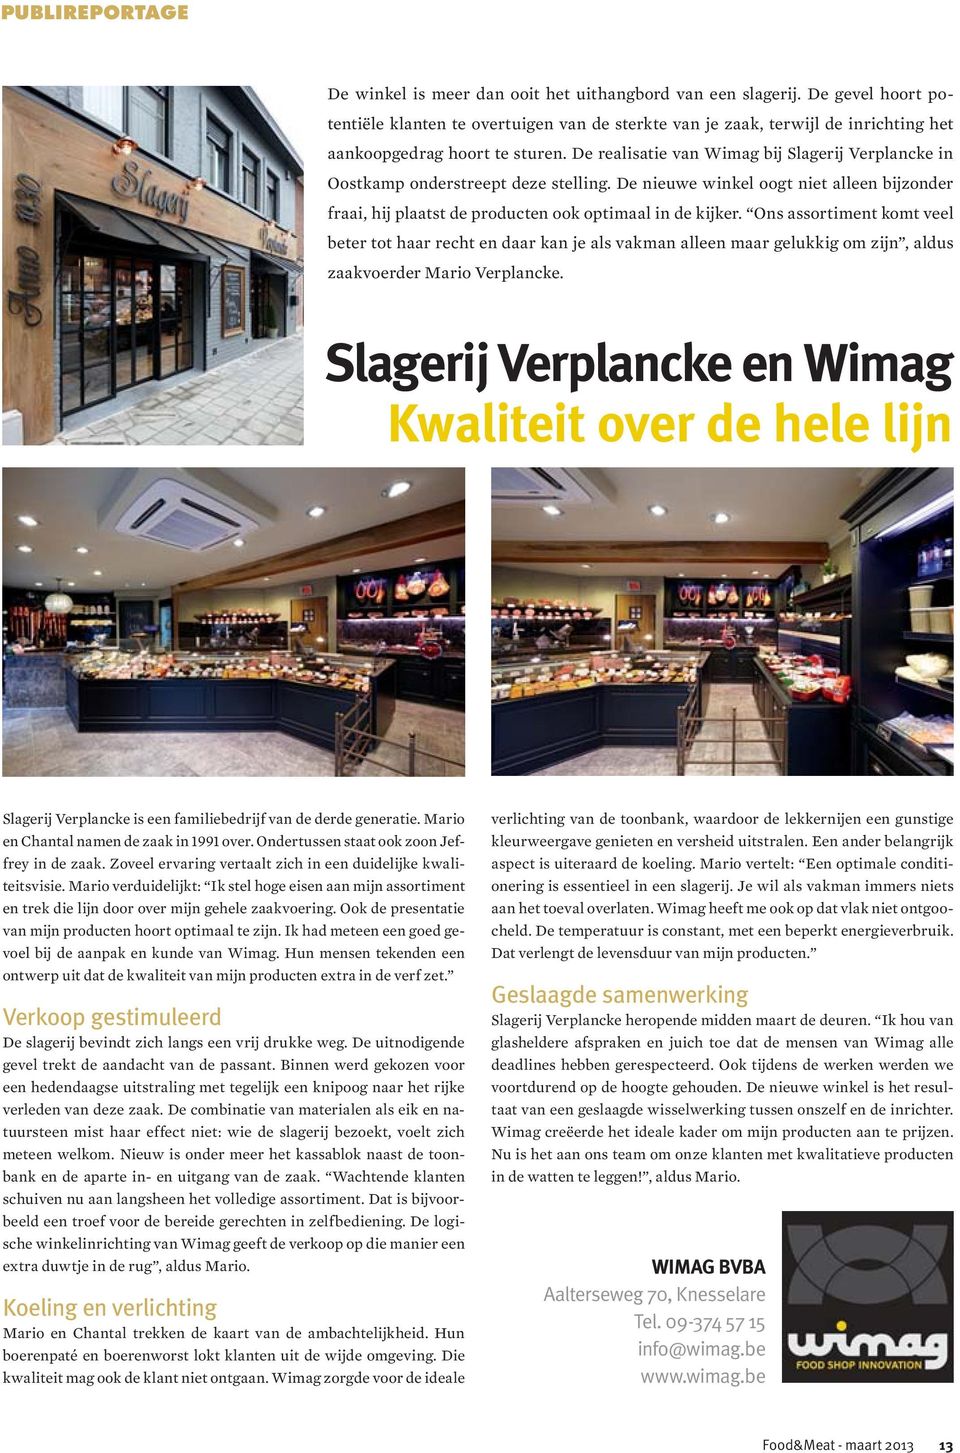 De realisatie van Wimag bij Slagerij Verplancke in Oostkamp onderstreept deze stelling. De nieuwe winkel oogt niet alleen bijzonder fraai, hij plaatst de producten ook optimaal in de kijker.